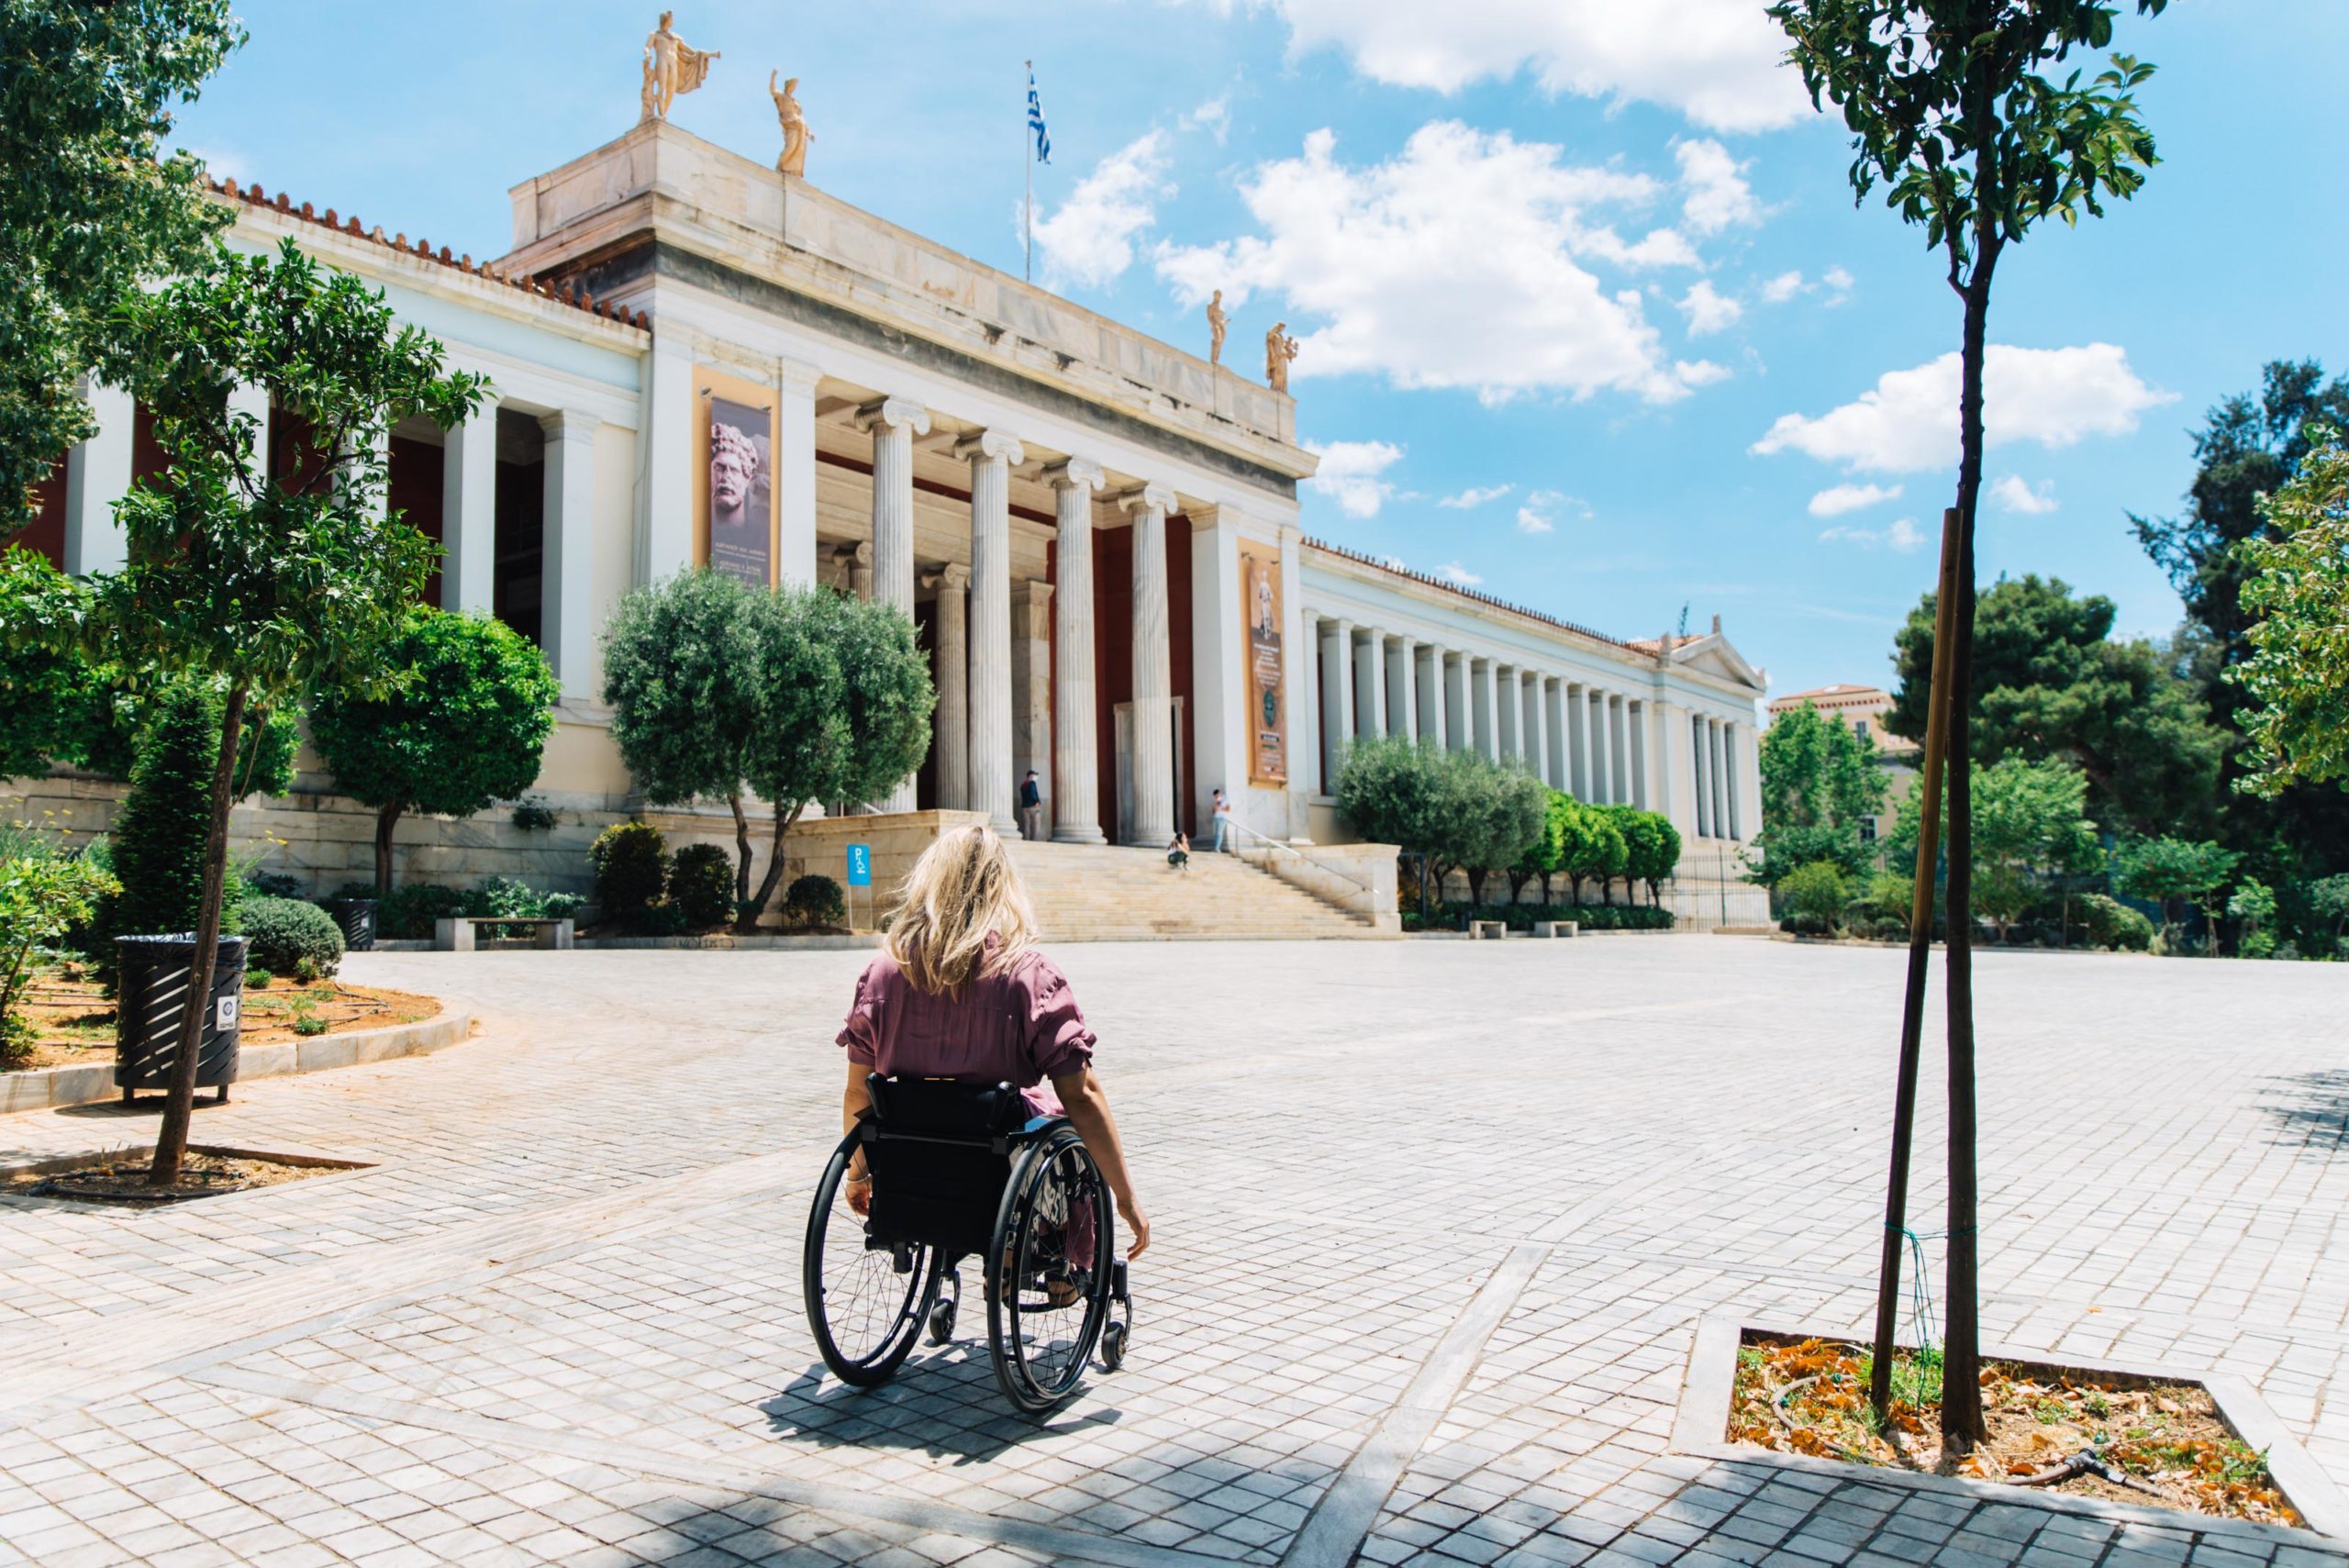 Μία πόλη προσβάσιμη σε όλους: Eξειδικευμένες διαδρομές στην Αθήνα για άτομα με αναπηρία